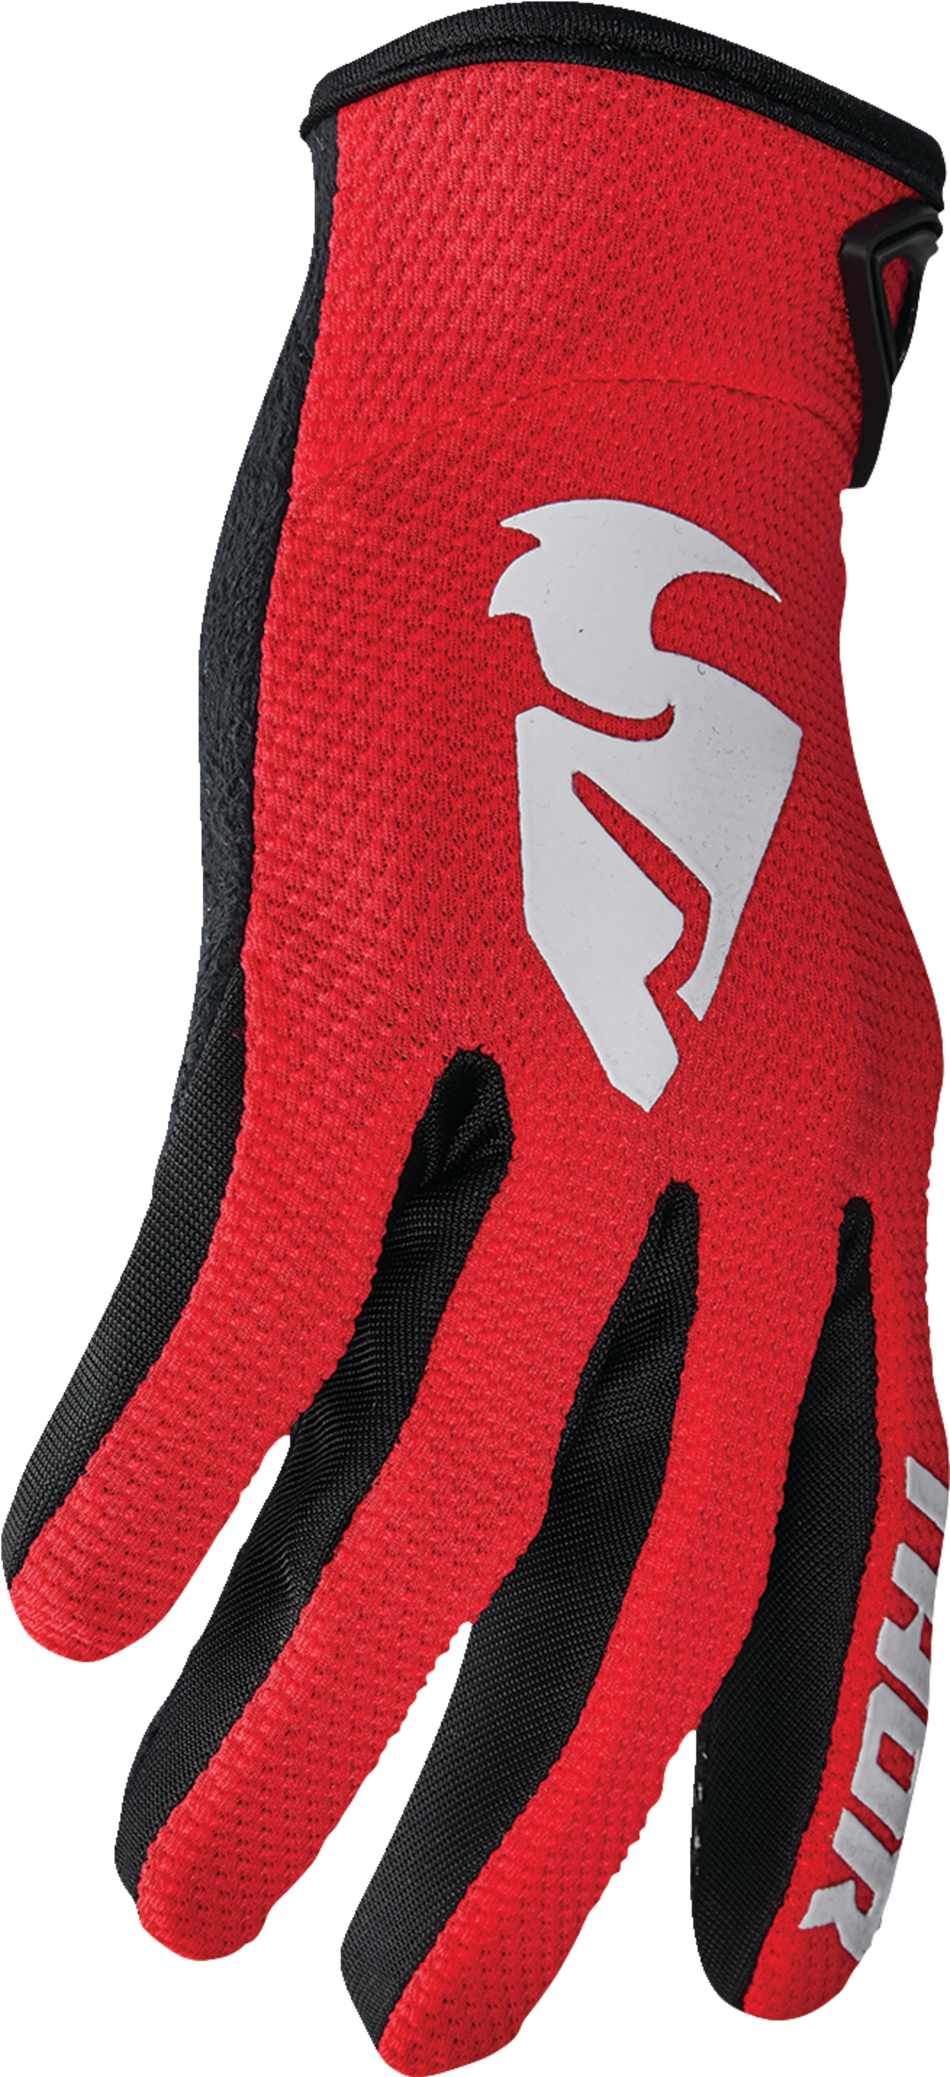 THOR Sector Gloves - Red/White - Medium 3330-7269